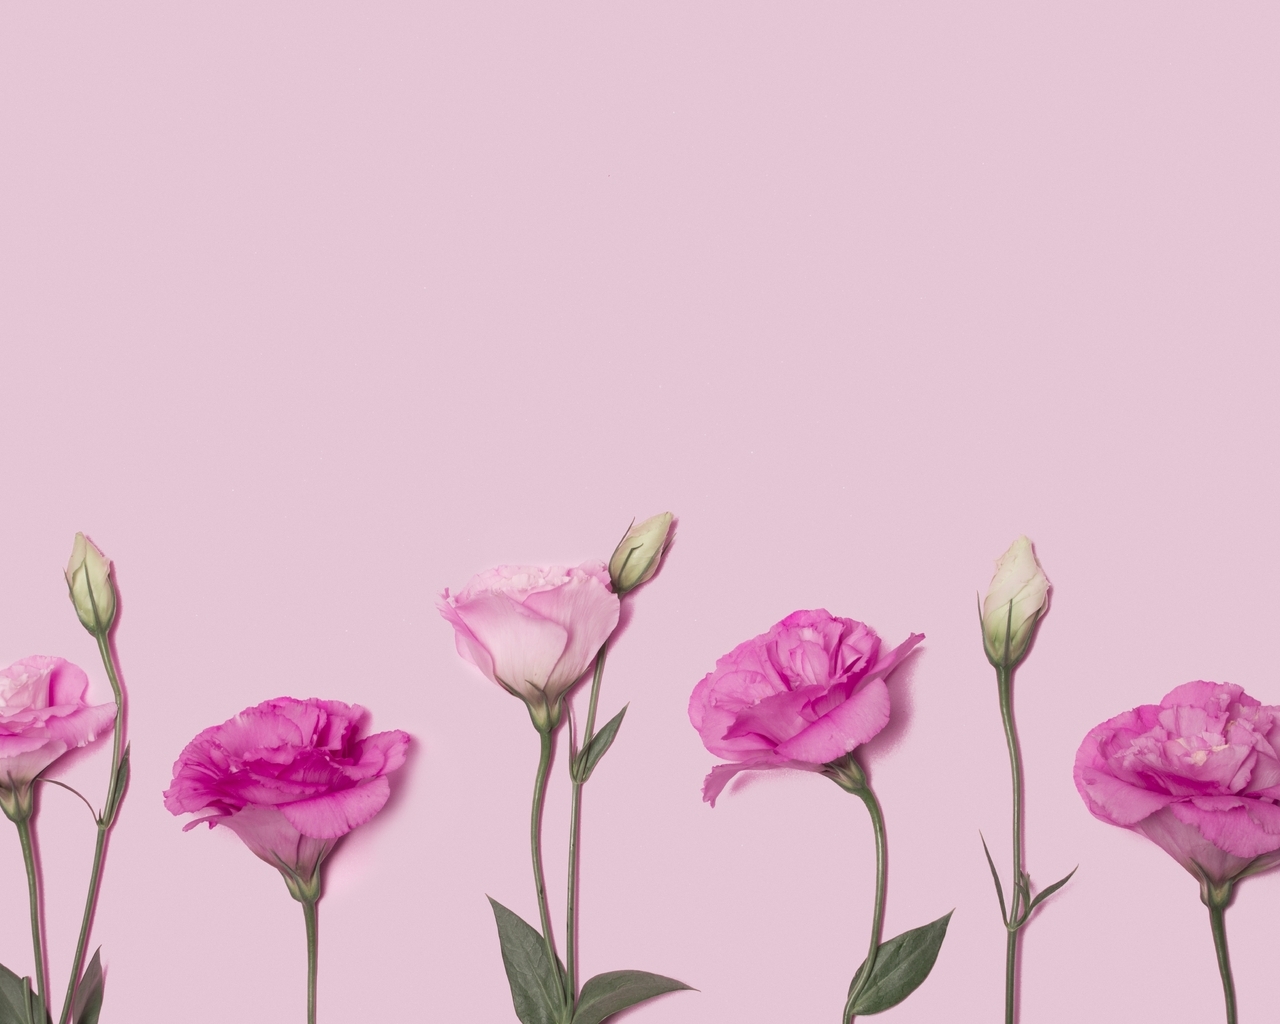 Image: Eustoma, flowers, pink